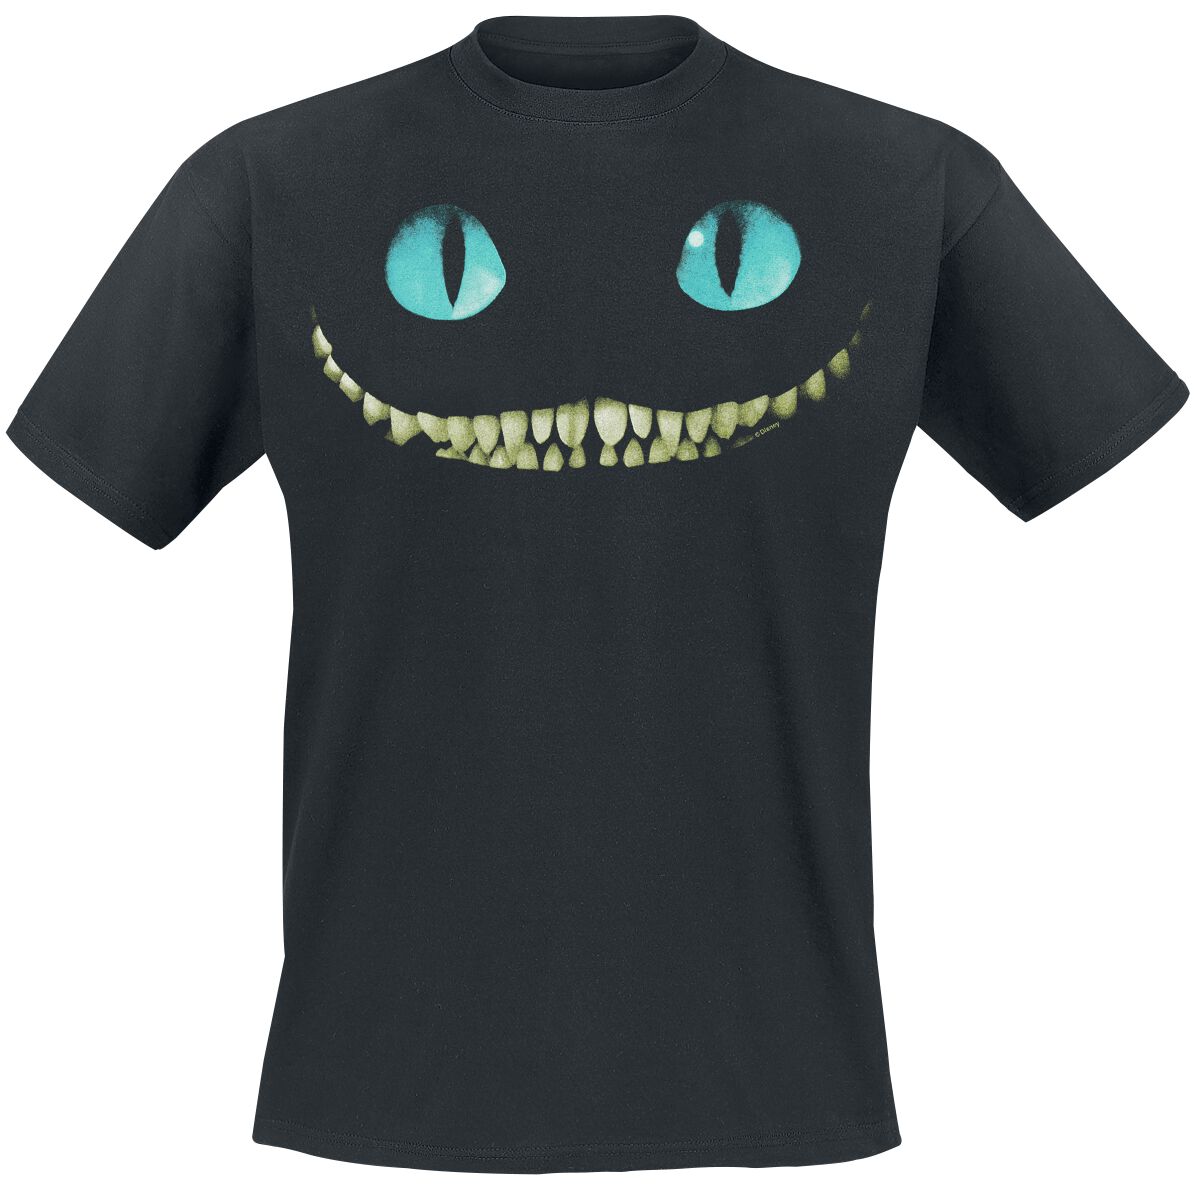 Alice im Wunderland - Disney T-Shirt - Grinsekatze - Lächeln - S bis XL - für Männer - Größe XL - schwarz  - Lizenzierter Fanartikel